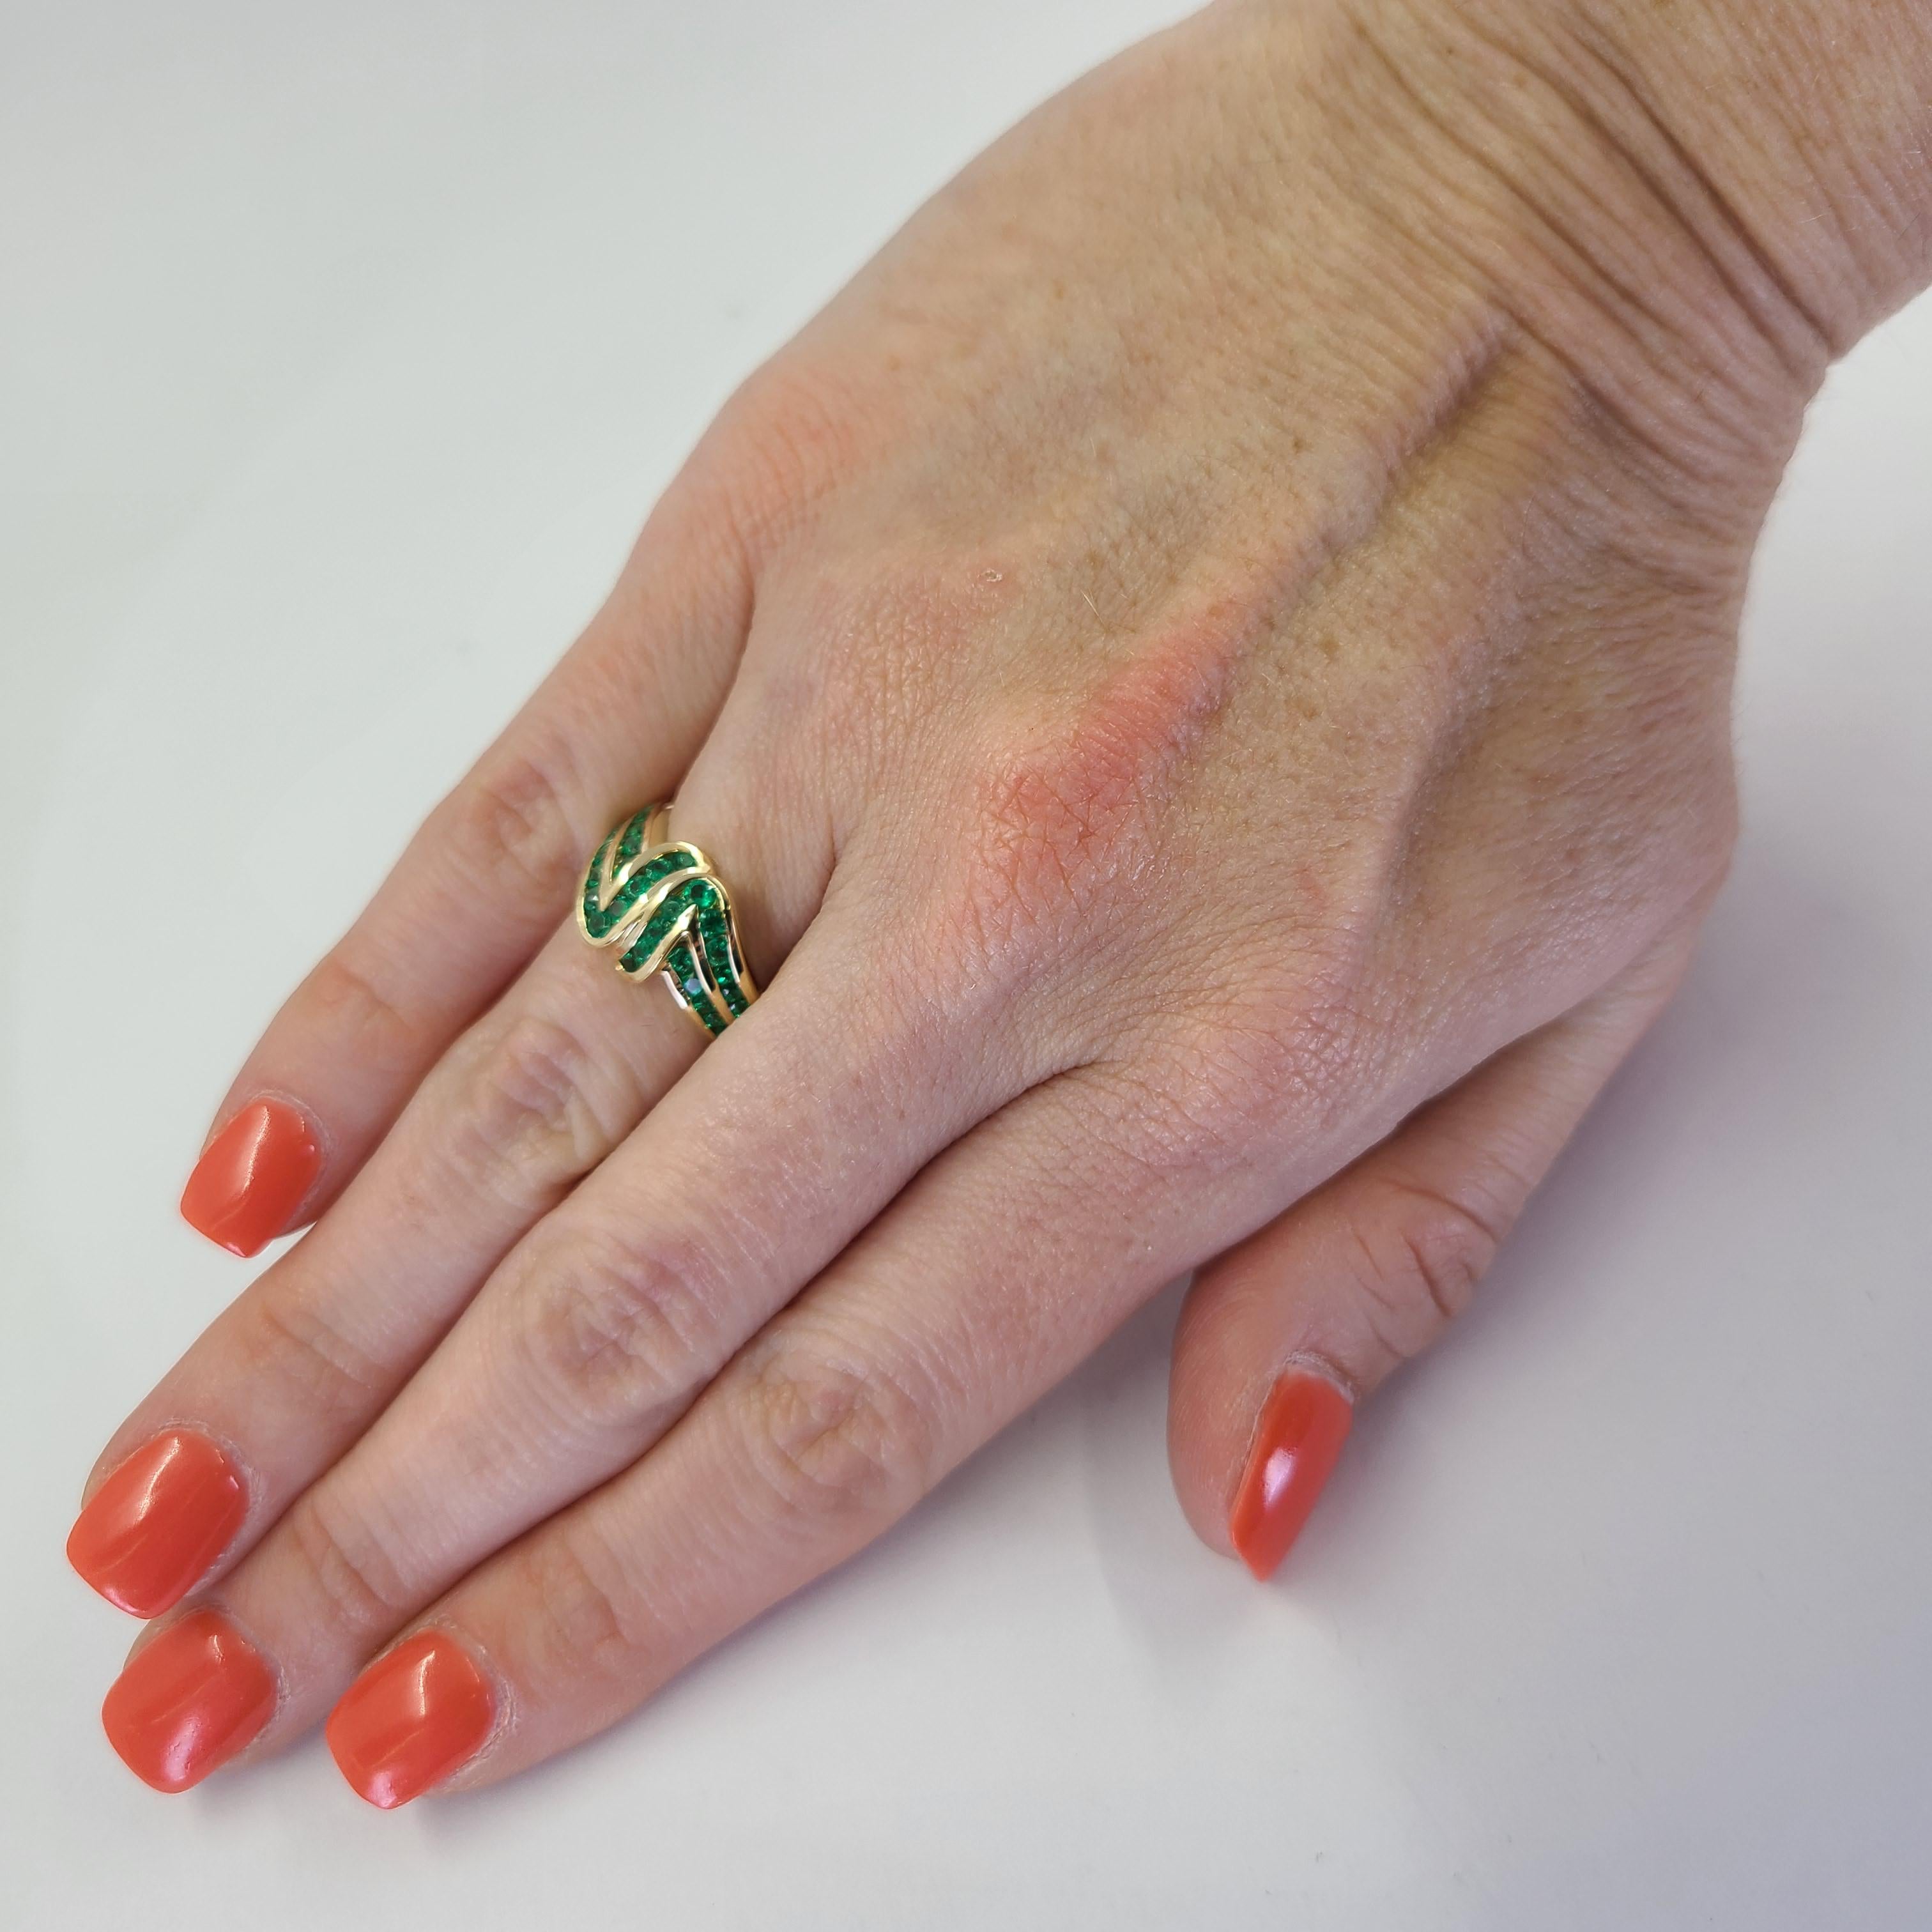 Ring aus 18 Karat Gelbgold mit 32 runden Smaragden in Kanalfassung von insgesamt ca. 1 Karat. Fingergröße 7.5; Der Kauf beinhaltet einen Größenservice. Das fertige Gewicht beträgt 4,2 Gramm.